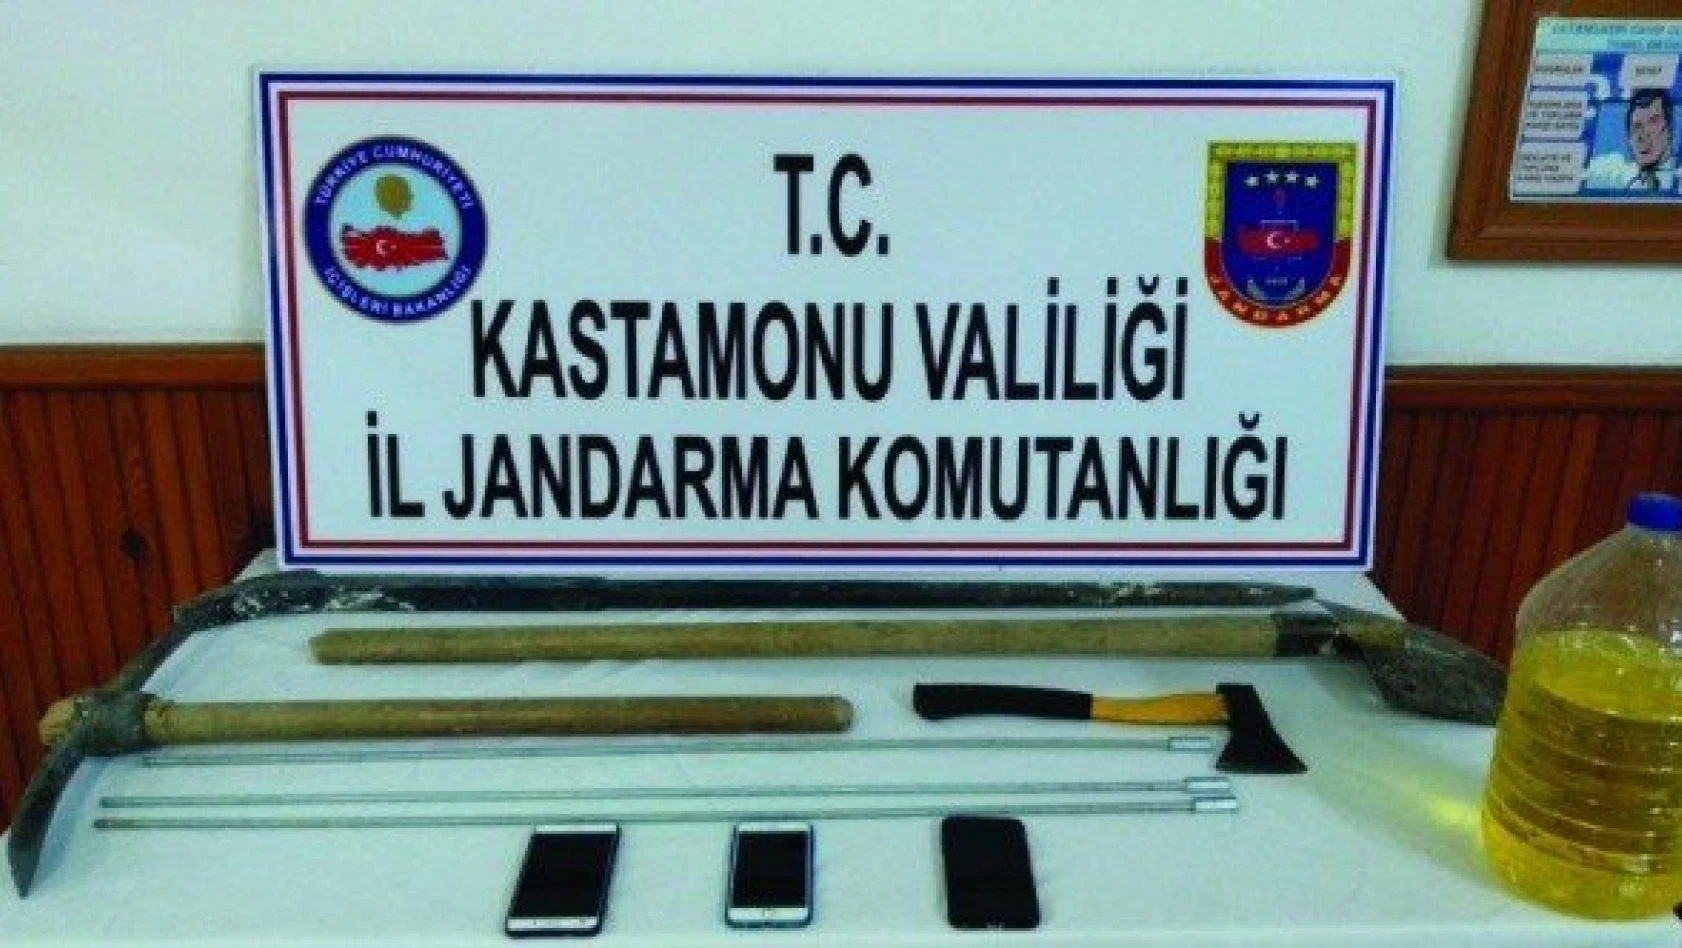 Kastamonu'da kaçak kazı yapan 3 kişi yakalandı